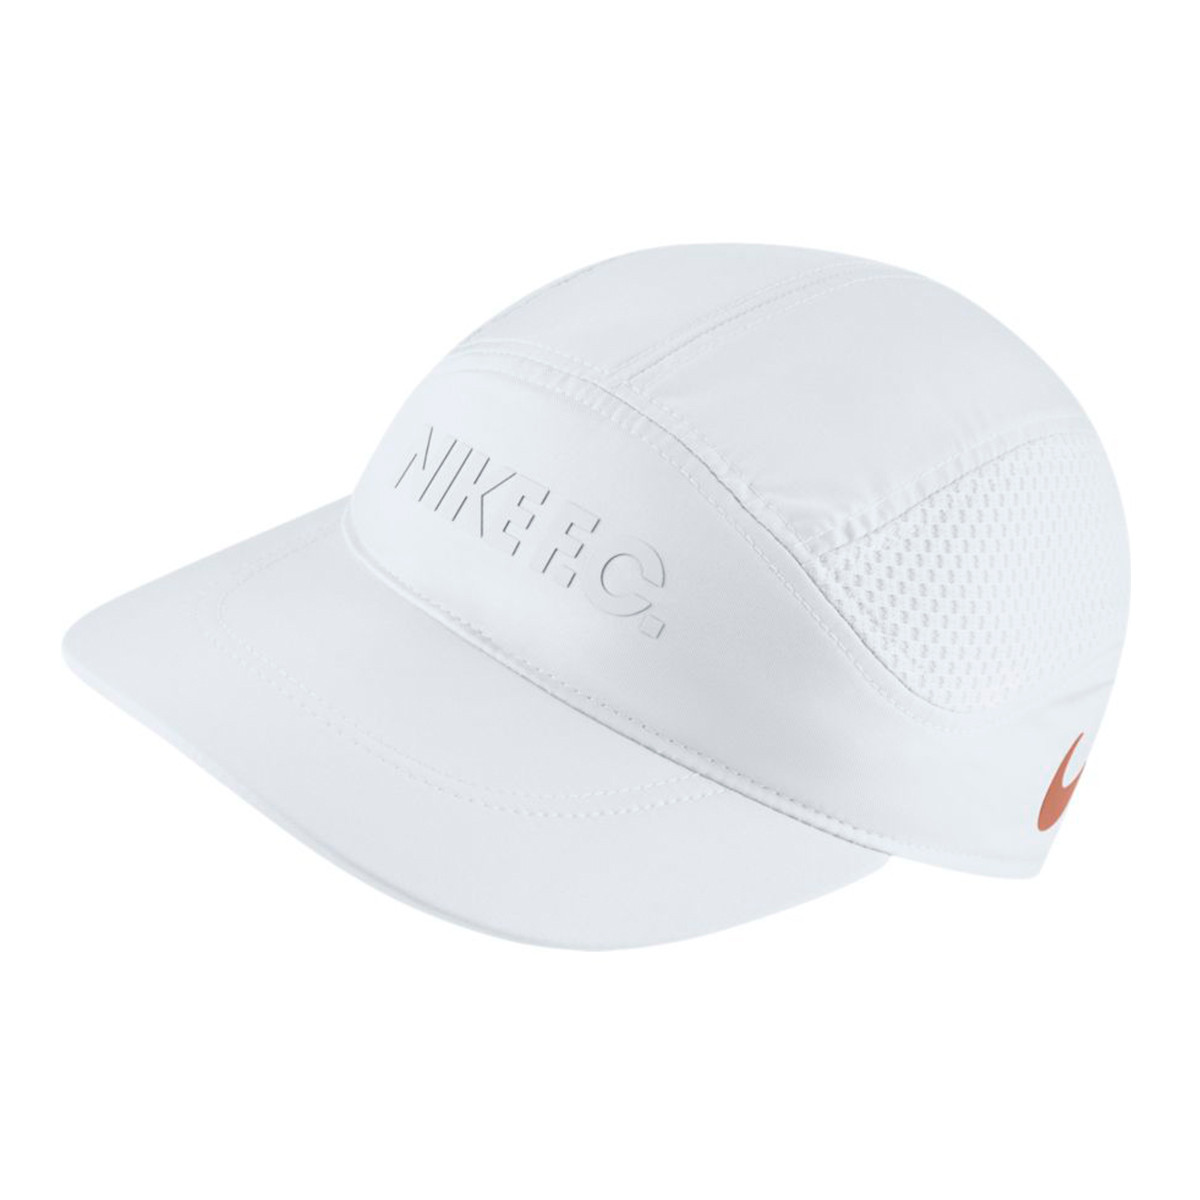 white nike hat